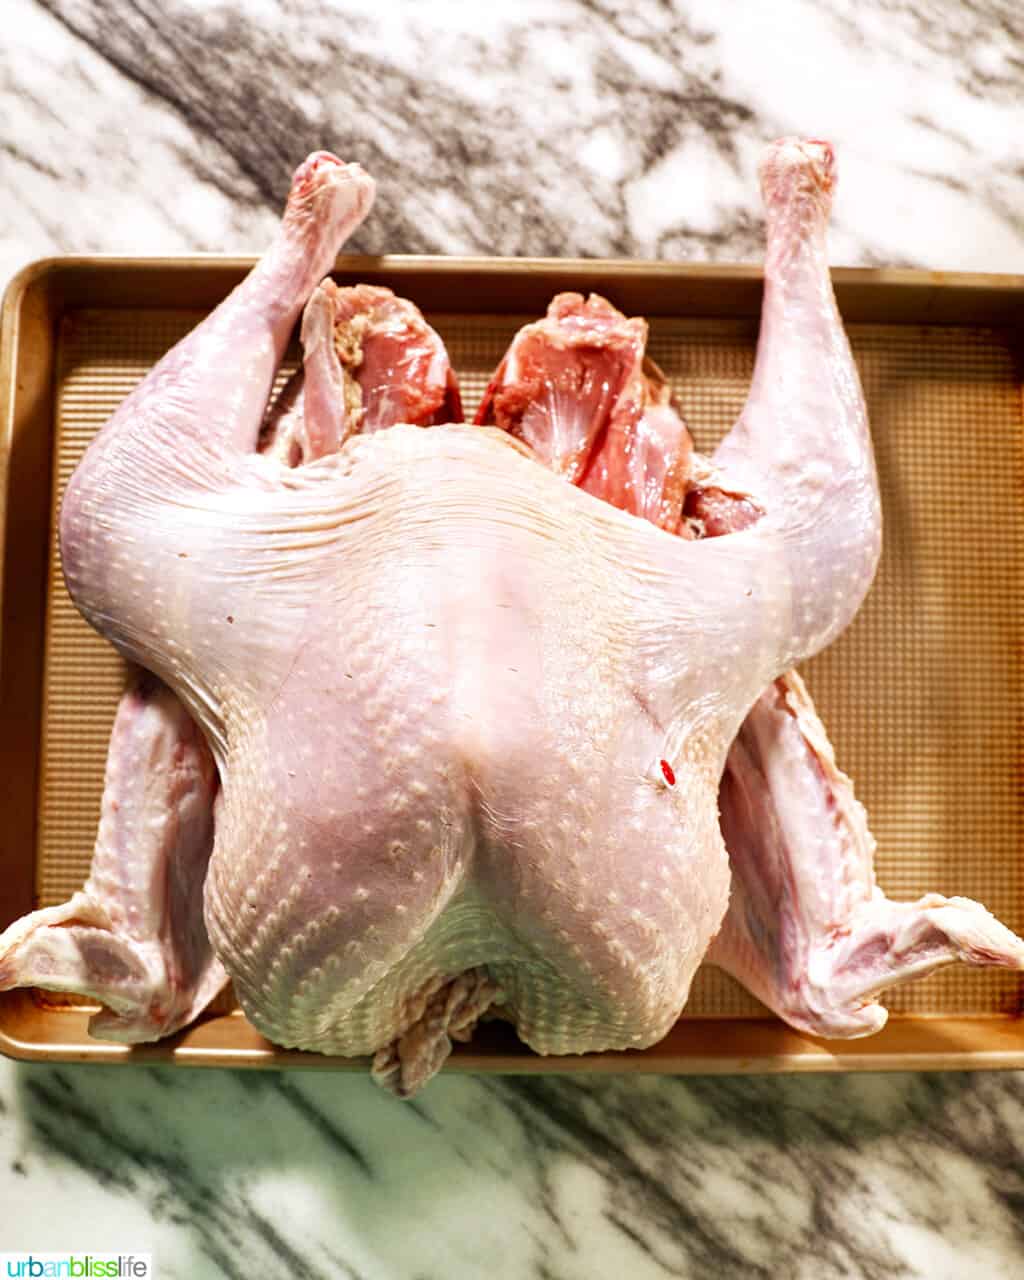 spatchcock turkey